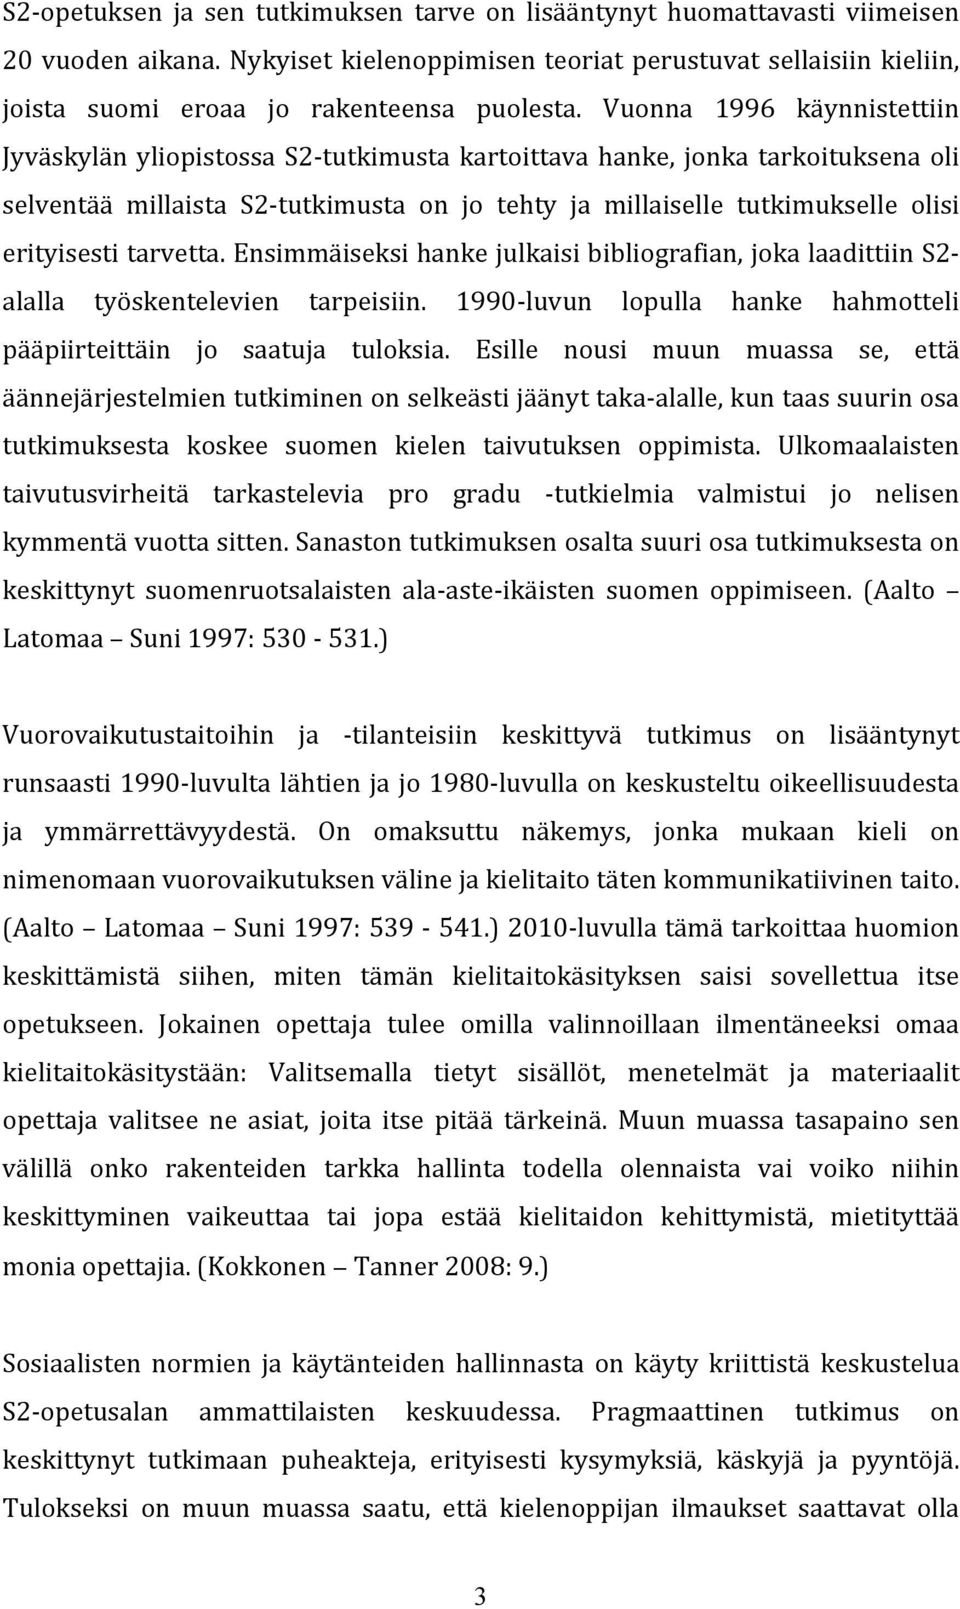 Vuonna 1996 käynnistettiin Jyväskylän yliopistossa S2- tutkimusta kartoittava hanke, jonka tarkoituksena oli selventää millaista S2- tutkimusta on jo tehty ja millaiselle tutkimukselle olisi